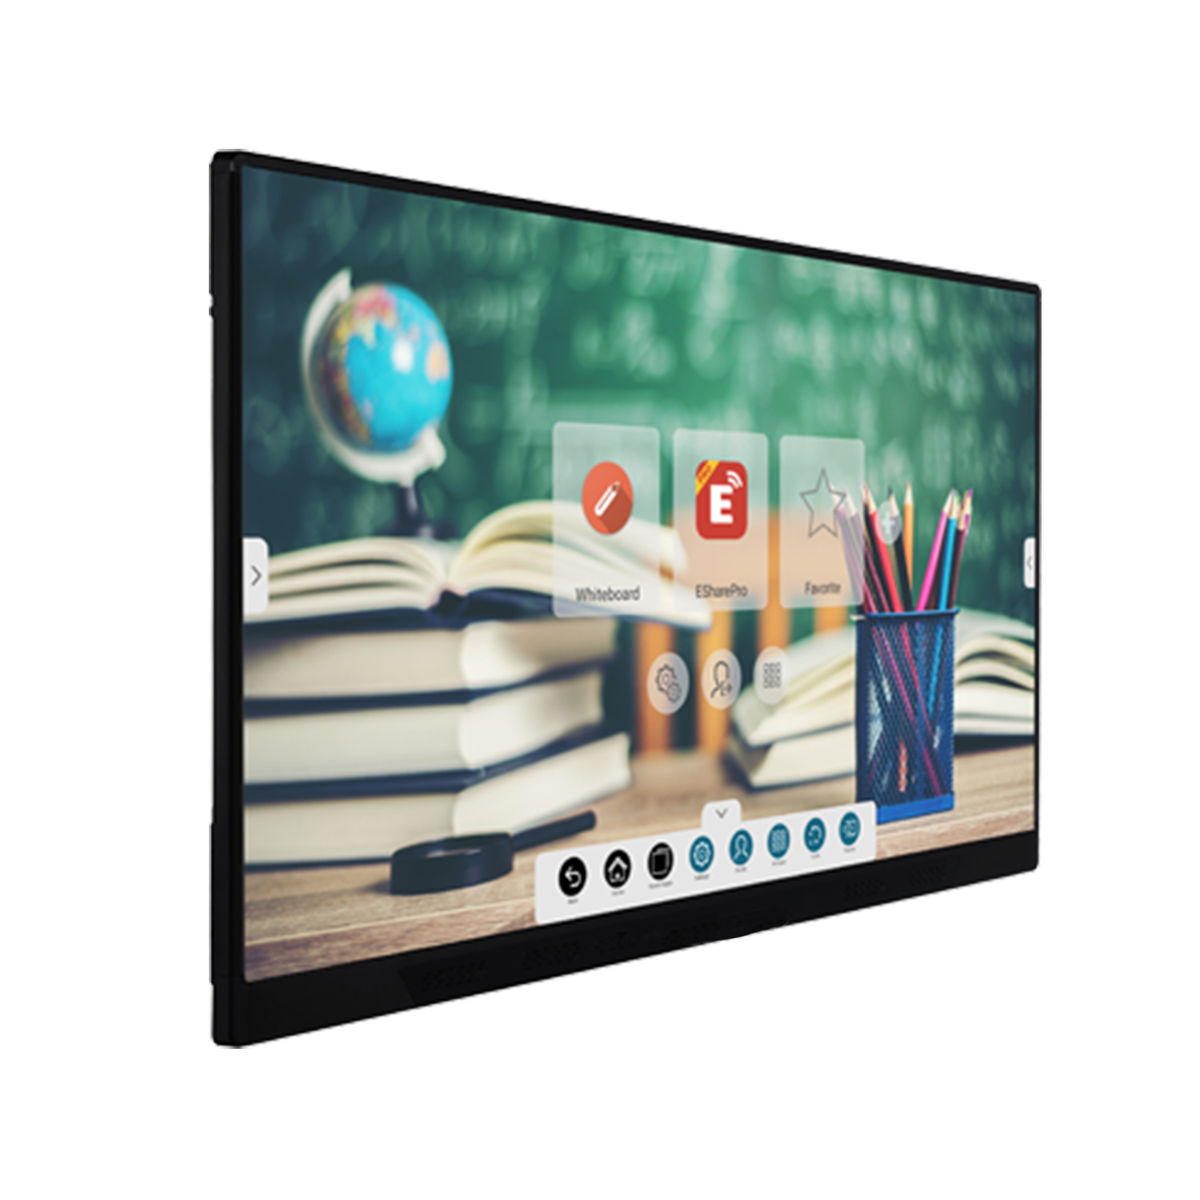 Ecran mural tactile 65 pouces UHD 4K , couleurs 16.7 millions, HDMI, USB , RJ45